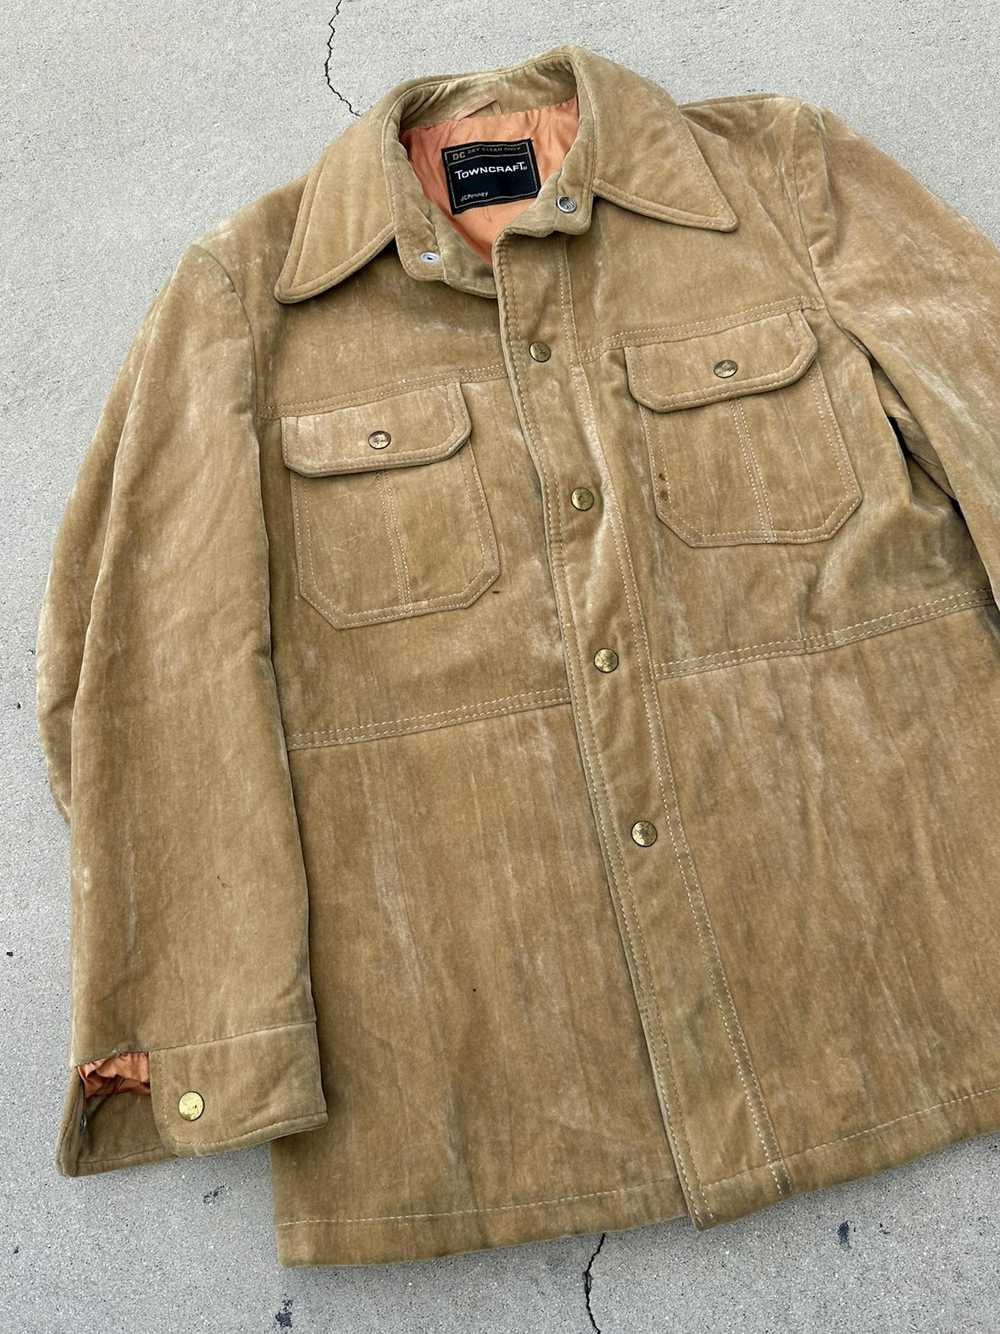 J.C. Penney × Leather Jacket × Vintage 70s Vintag… - image 4